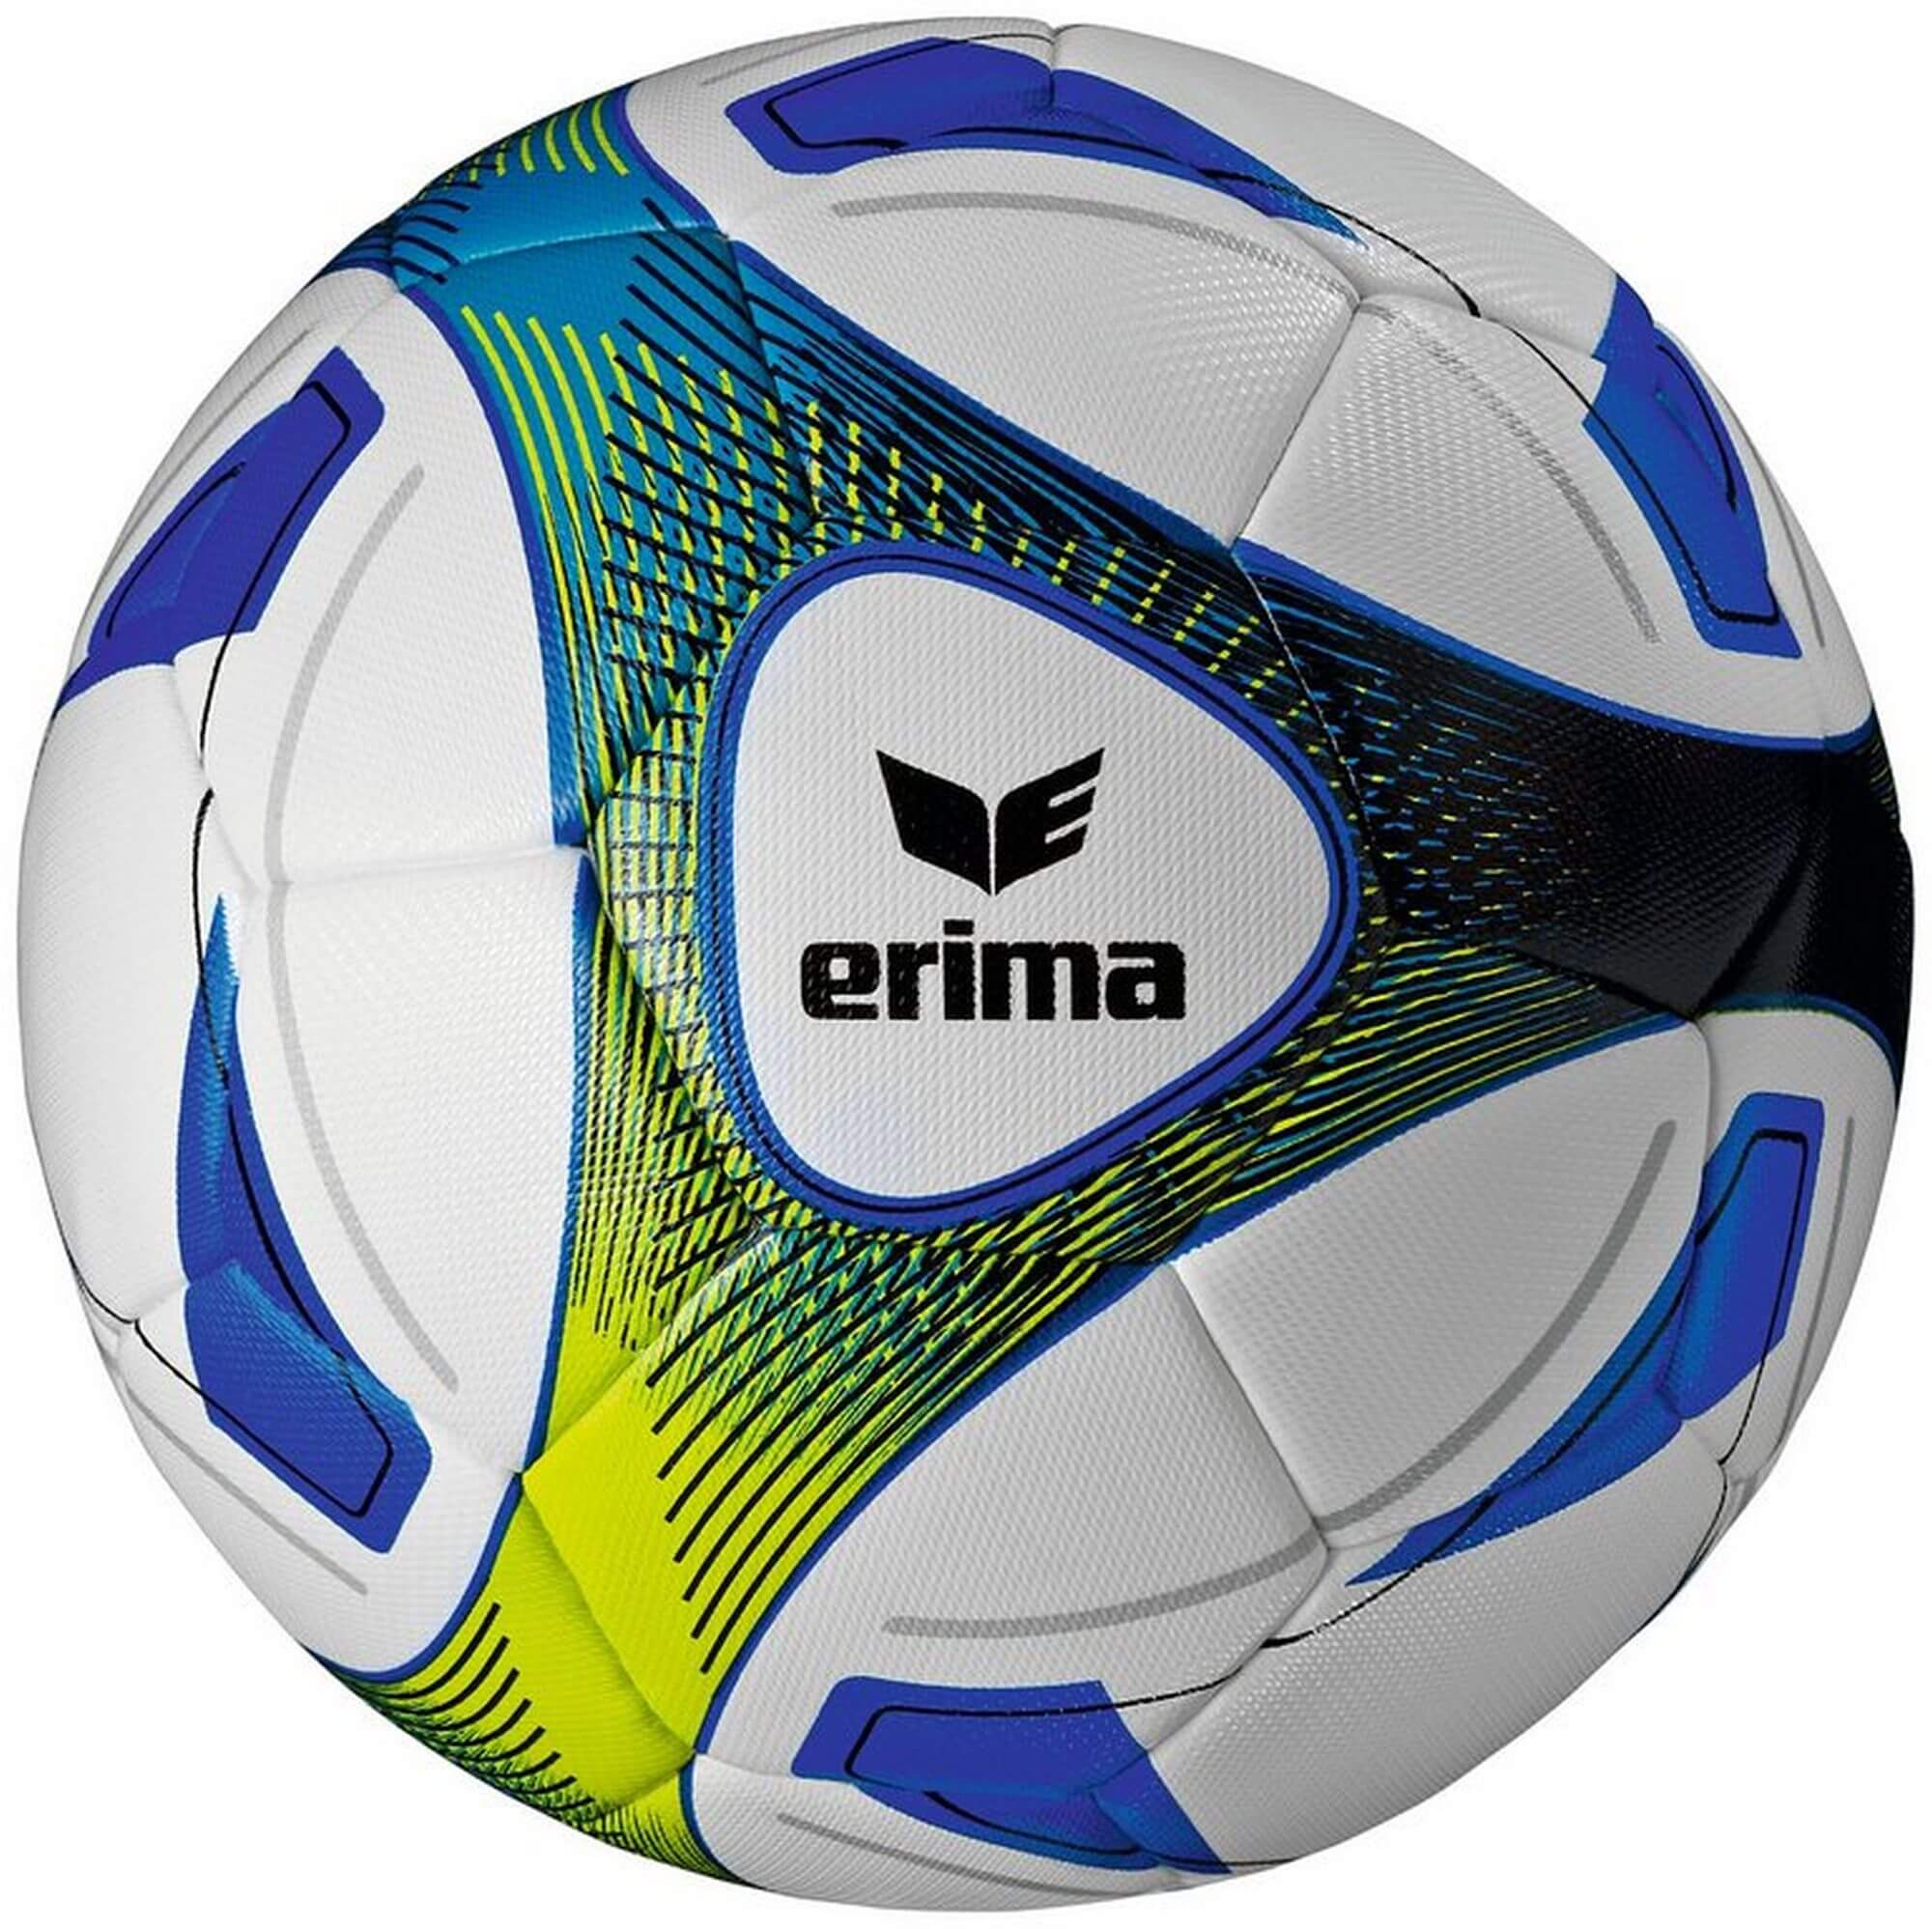 Erima Trainingsball HYBRID, Größe 5